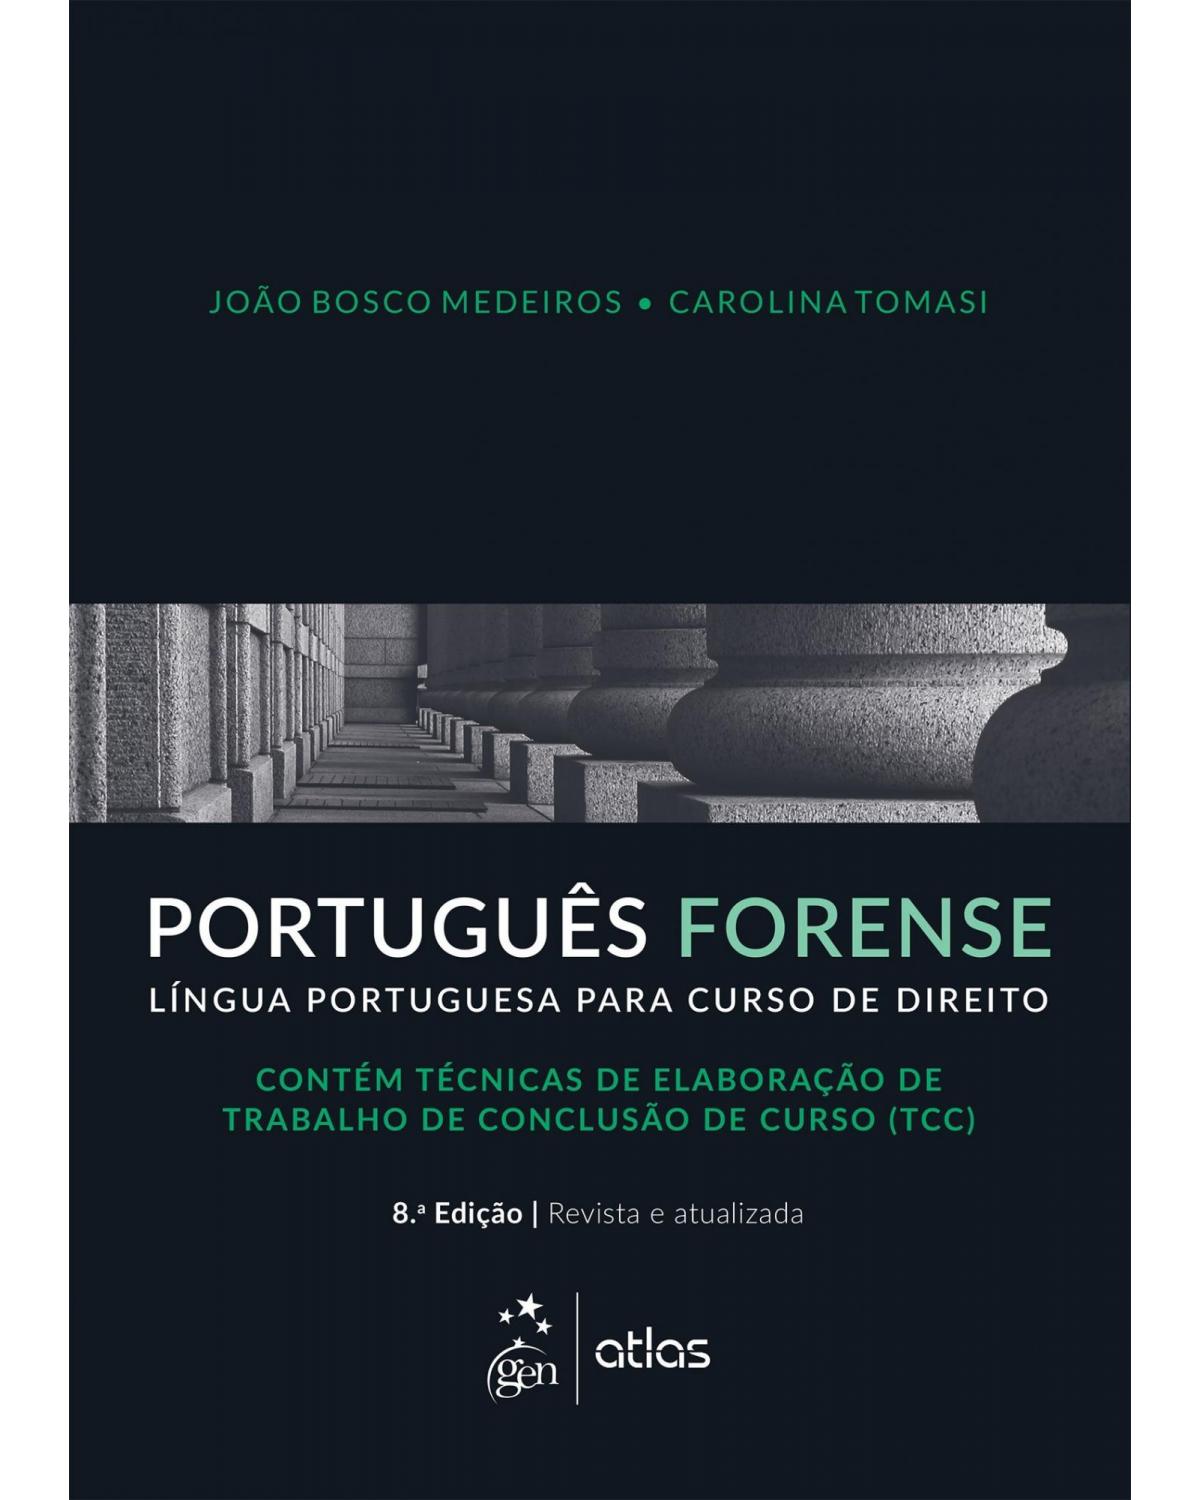 Português forense: Língua portuguesa para curso de direito - 8ª Edição | 2016